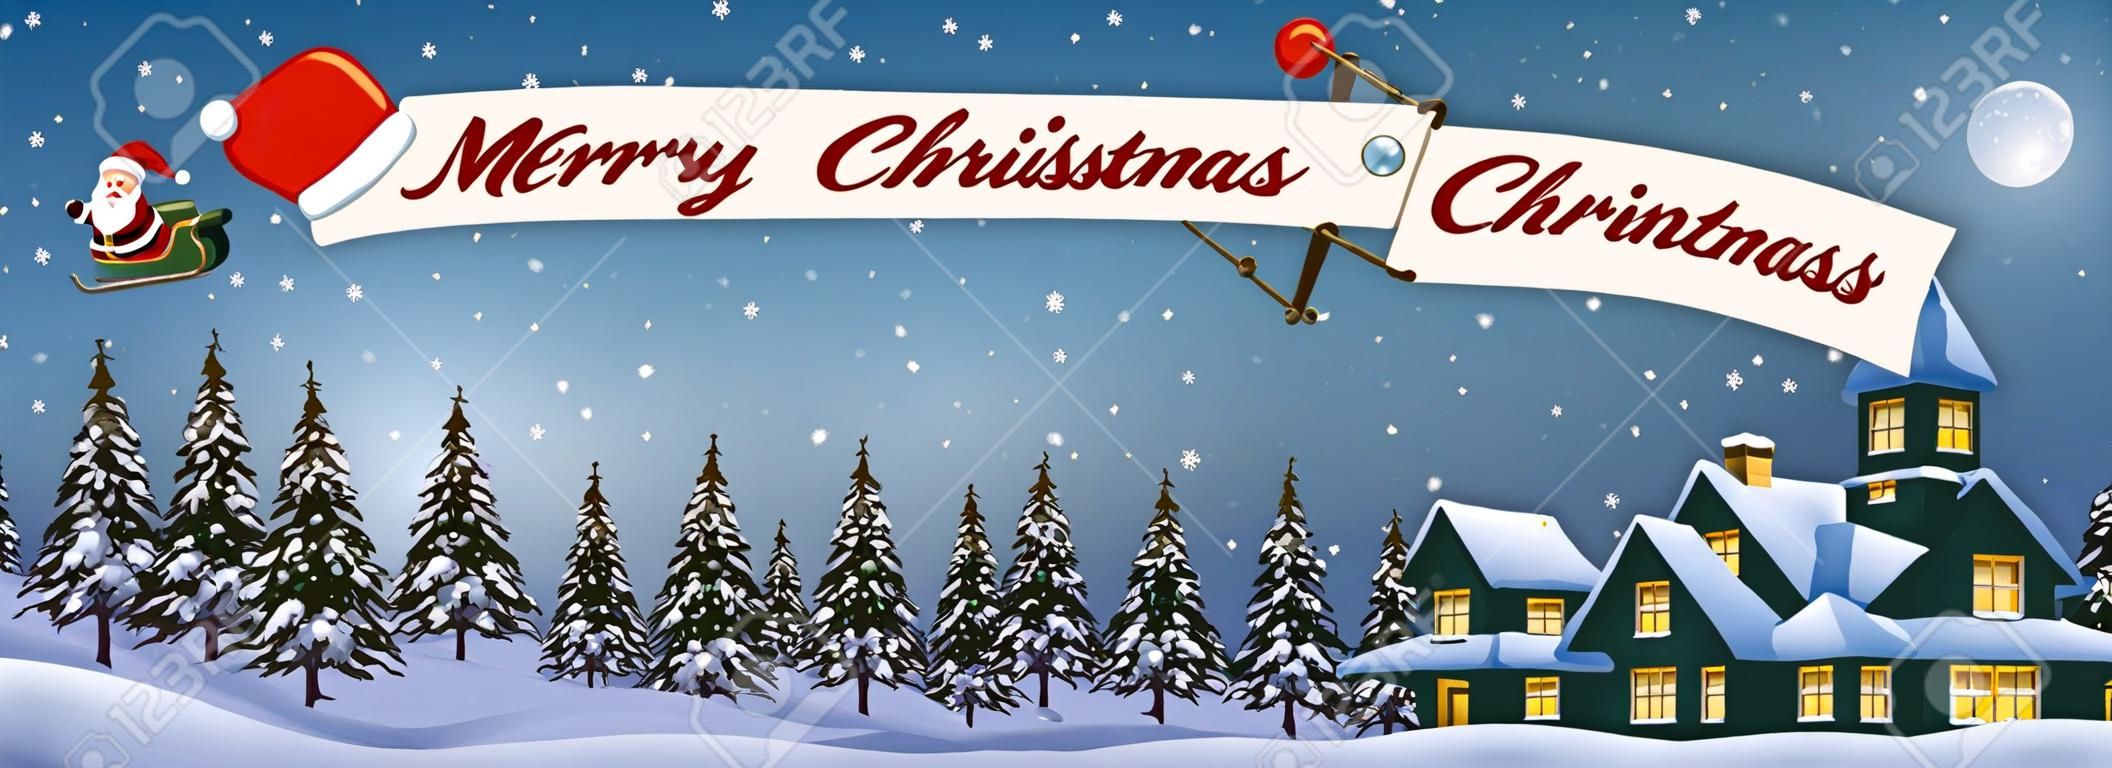 Санта-Клаус Мультфильм летать на самолете с Счастливого Рождества сообщение баннера в ночное время над Рождество снежный пейзаж